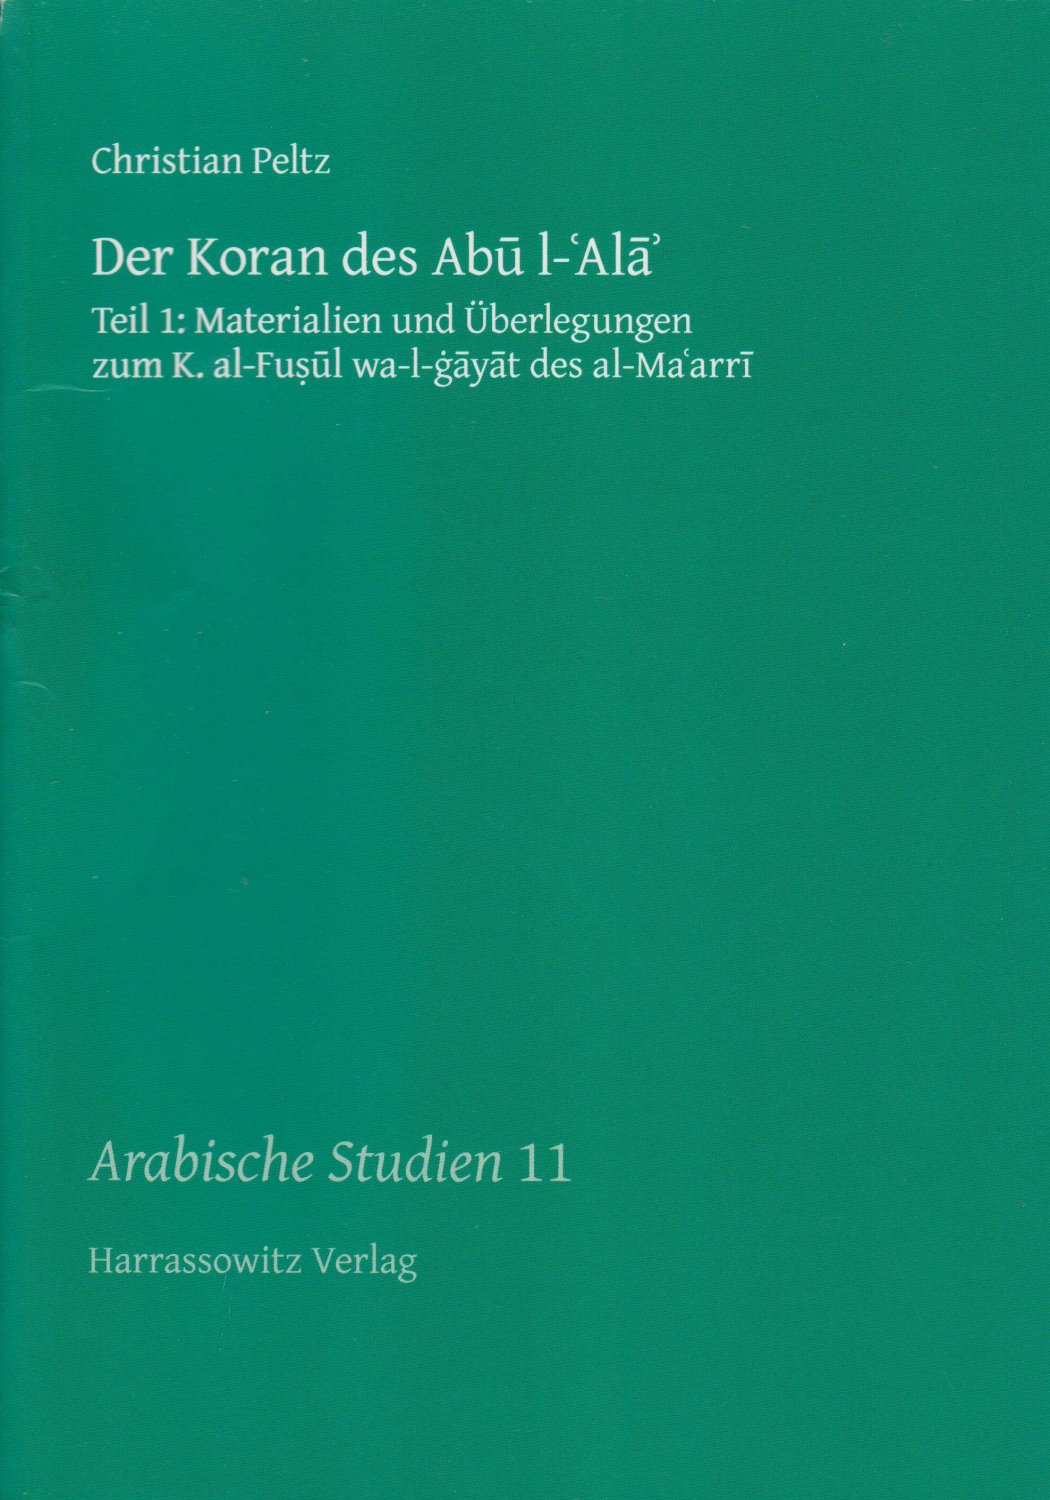 PELTZ, Christian:  Der Koran des Abu l-Ala. Teil 1: Materialien und Überlegungen. Teil 2: Glossar. (2 Bände). 